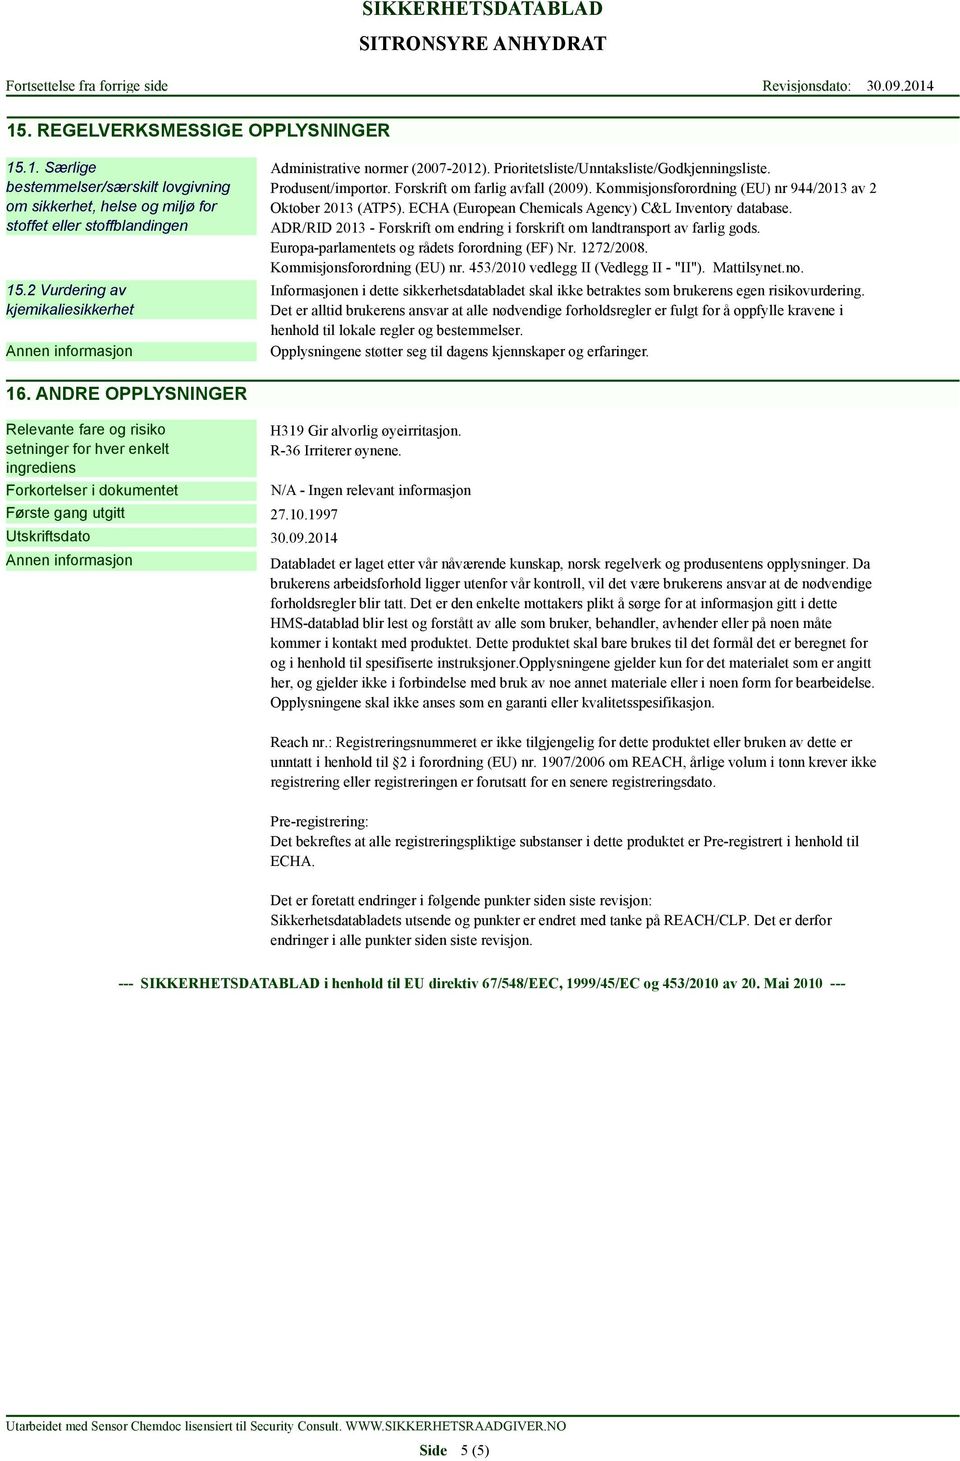 Kommisjonsforordning (EU) nr 944/2013 av 2 Oktober 2013 (ATP5). ECHA (European Chemicals Agency) C&L Inventory database.